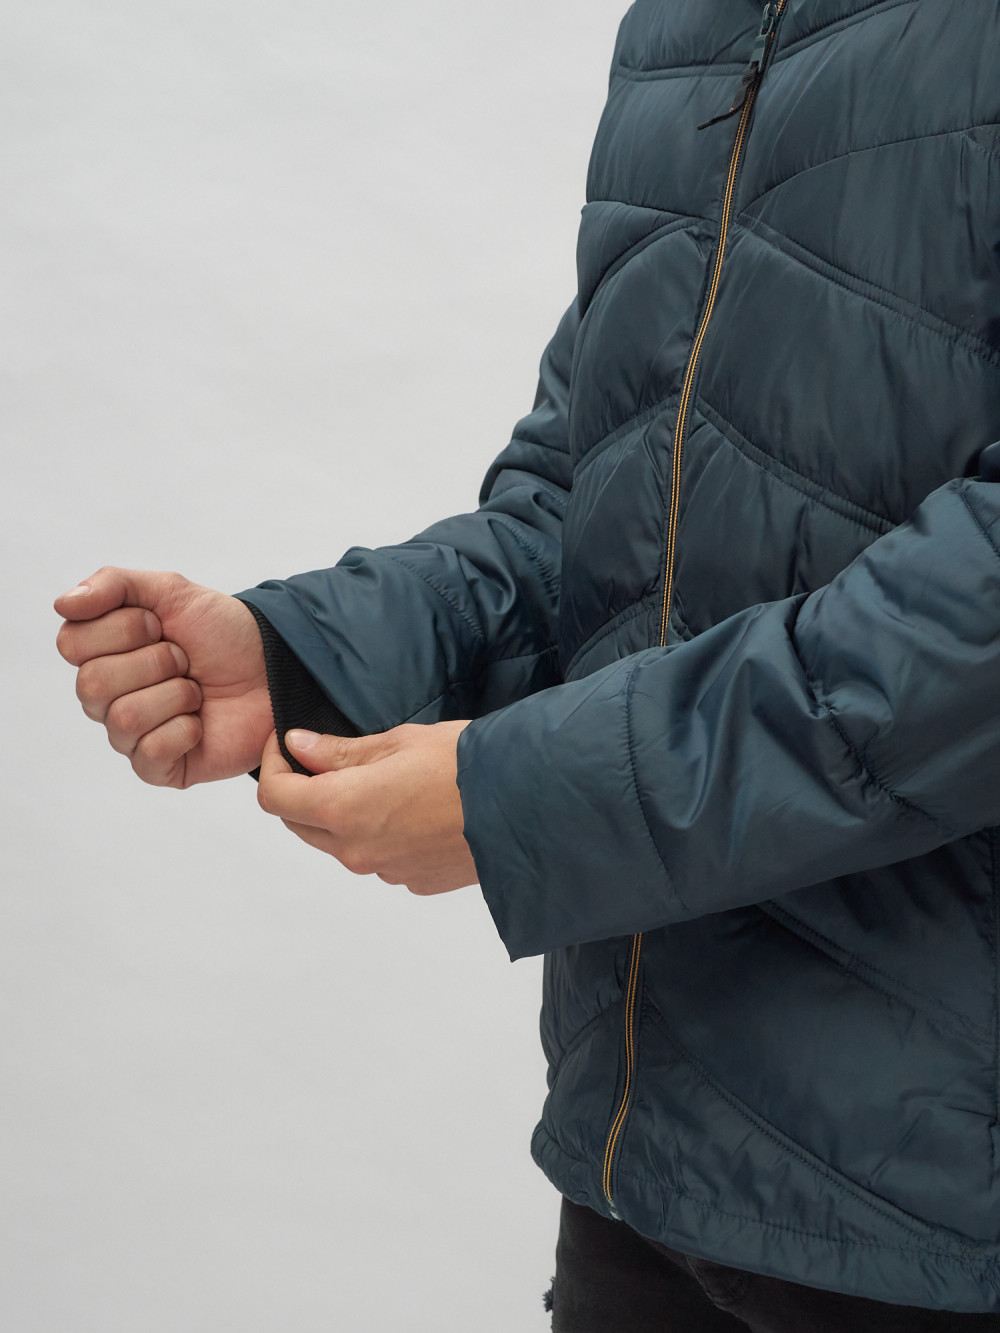 Купить куртку мужскую спортивную оптом от производителя недорого в Москве 62176TS 1